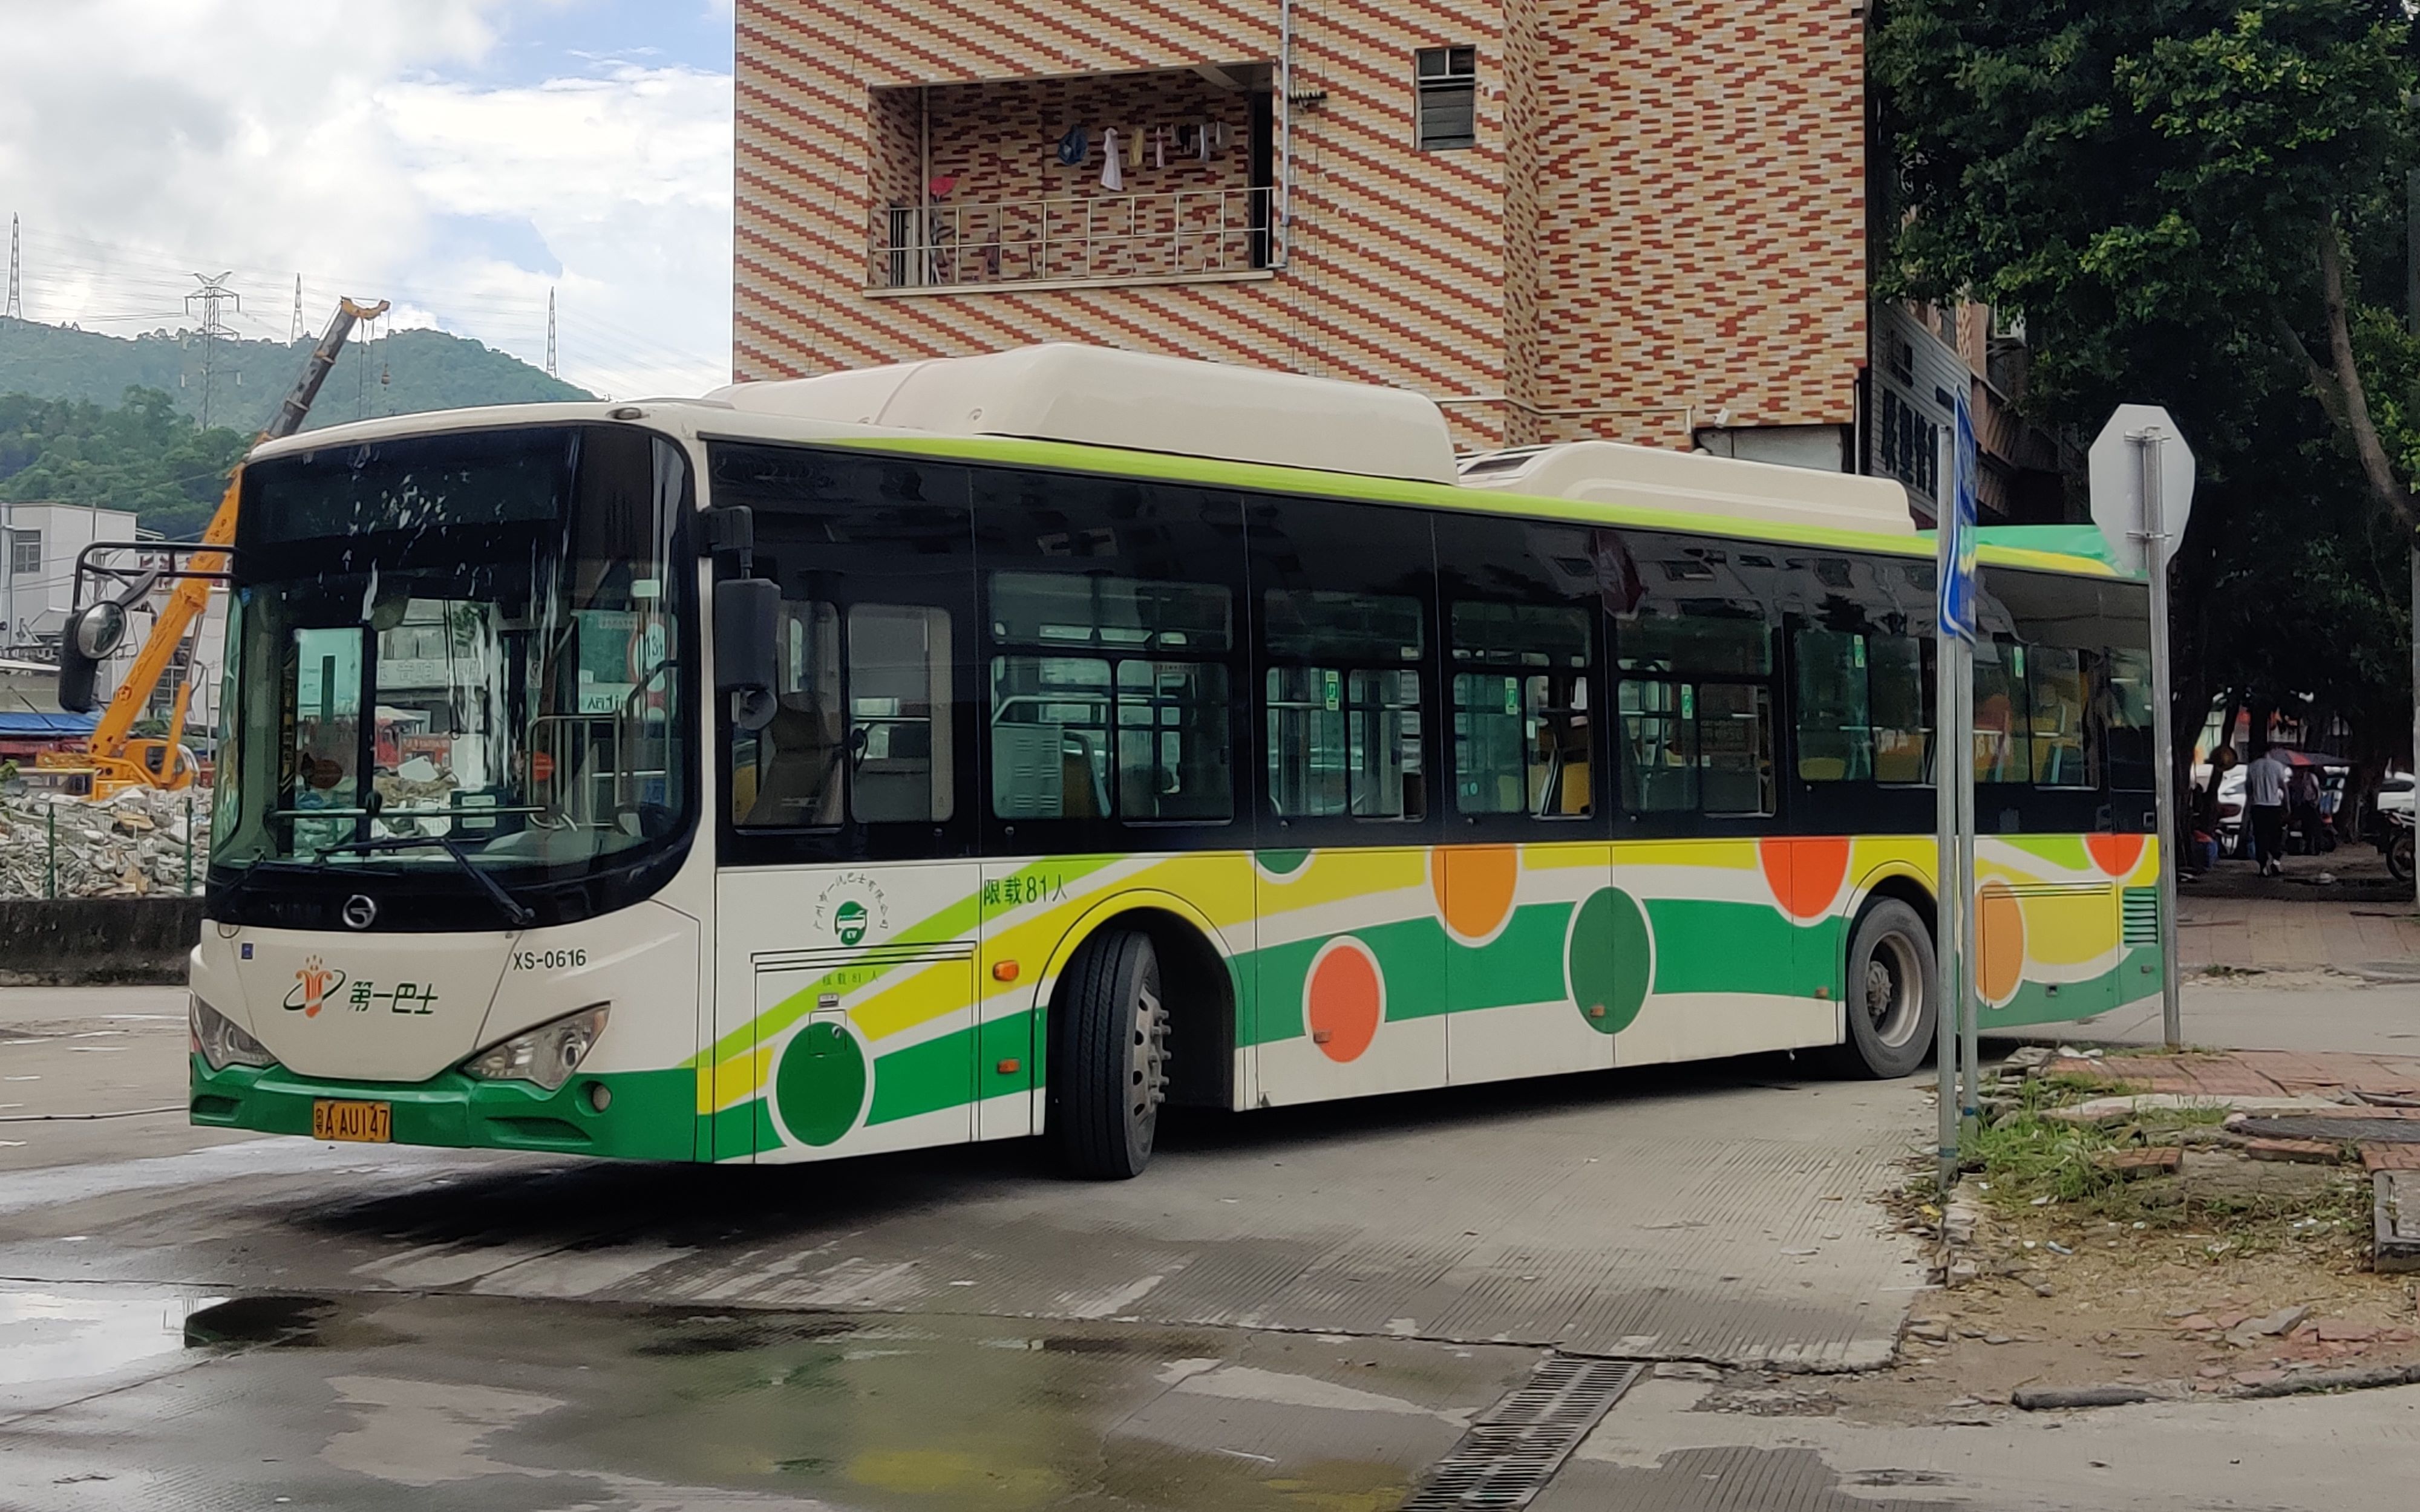 ep08: 广州公交 新穗巴士 862b路 沙太路北总站 